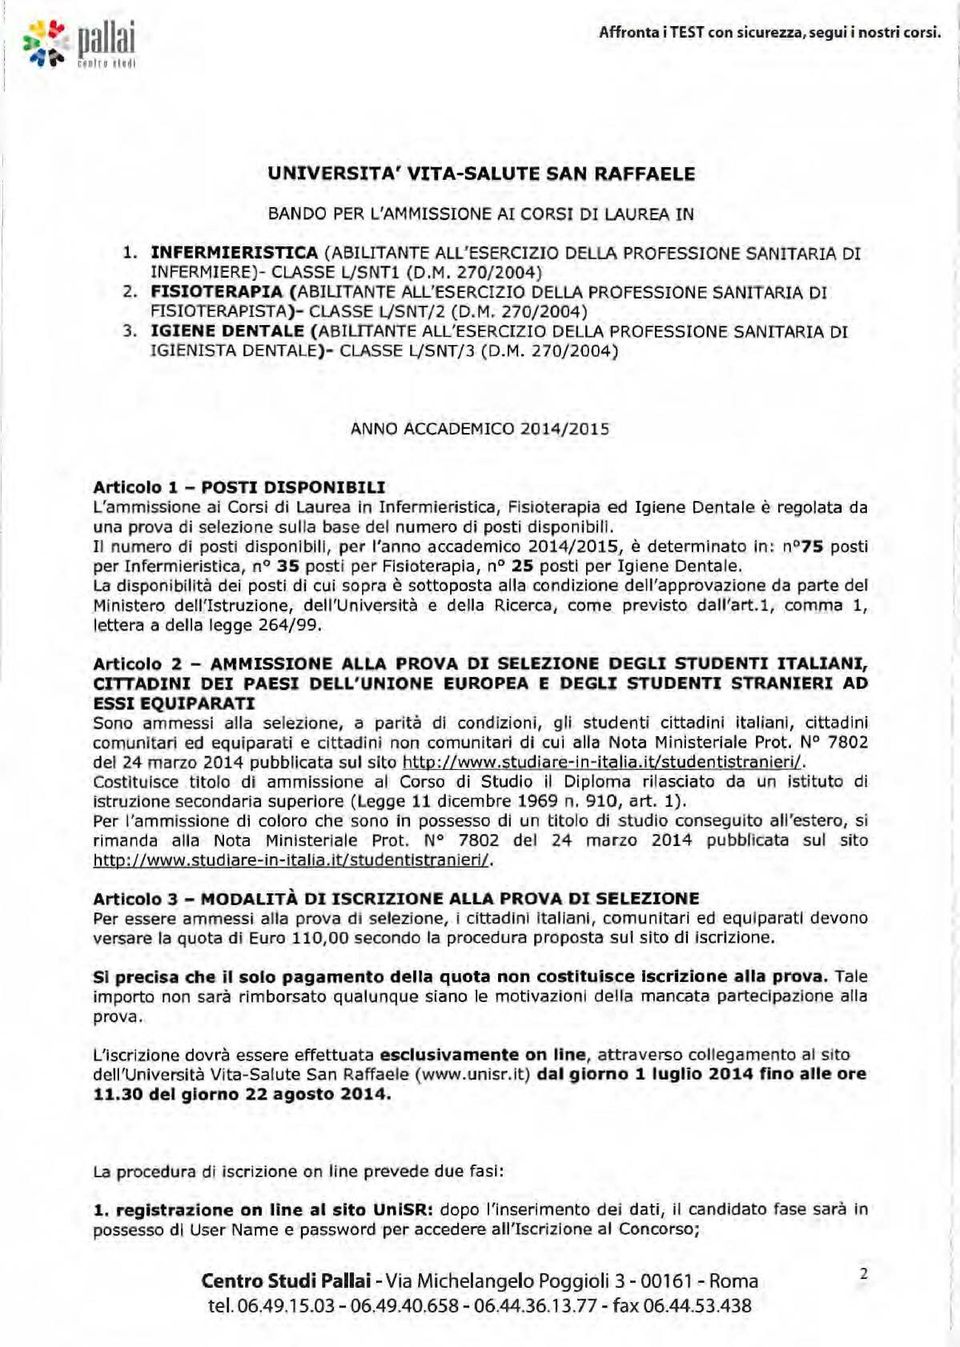 FISIOTERAPIA (ABIUTANTE ALL'ESERCIZIO DELLA PROFESSI ONE SANITARI A DI FISIOTERAPISTA)- CLASSE l/snt/2 (D.M. 270/2004) 3.